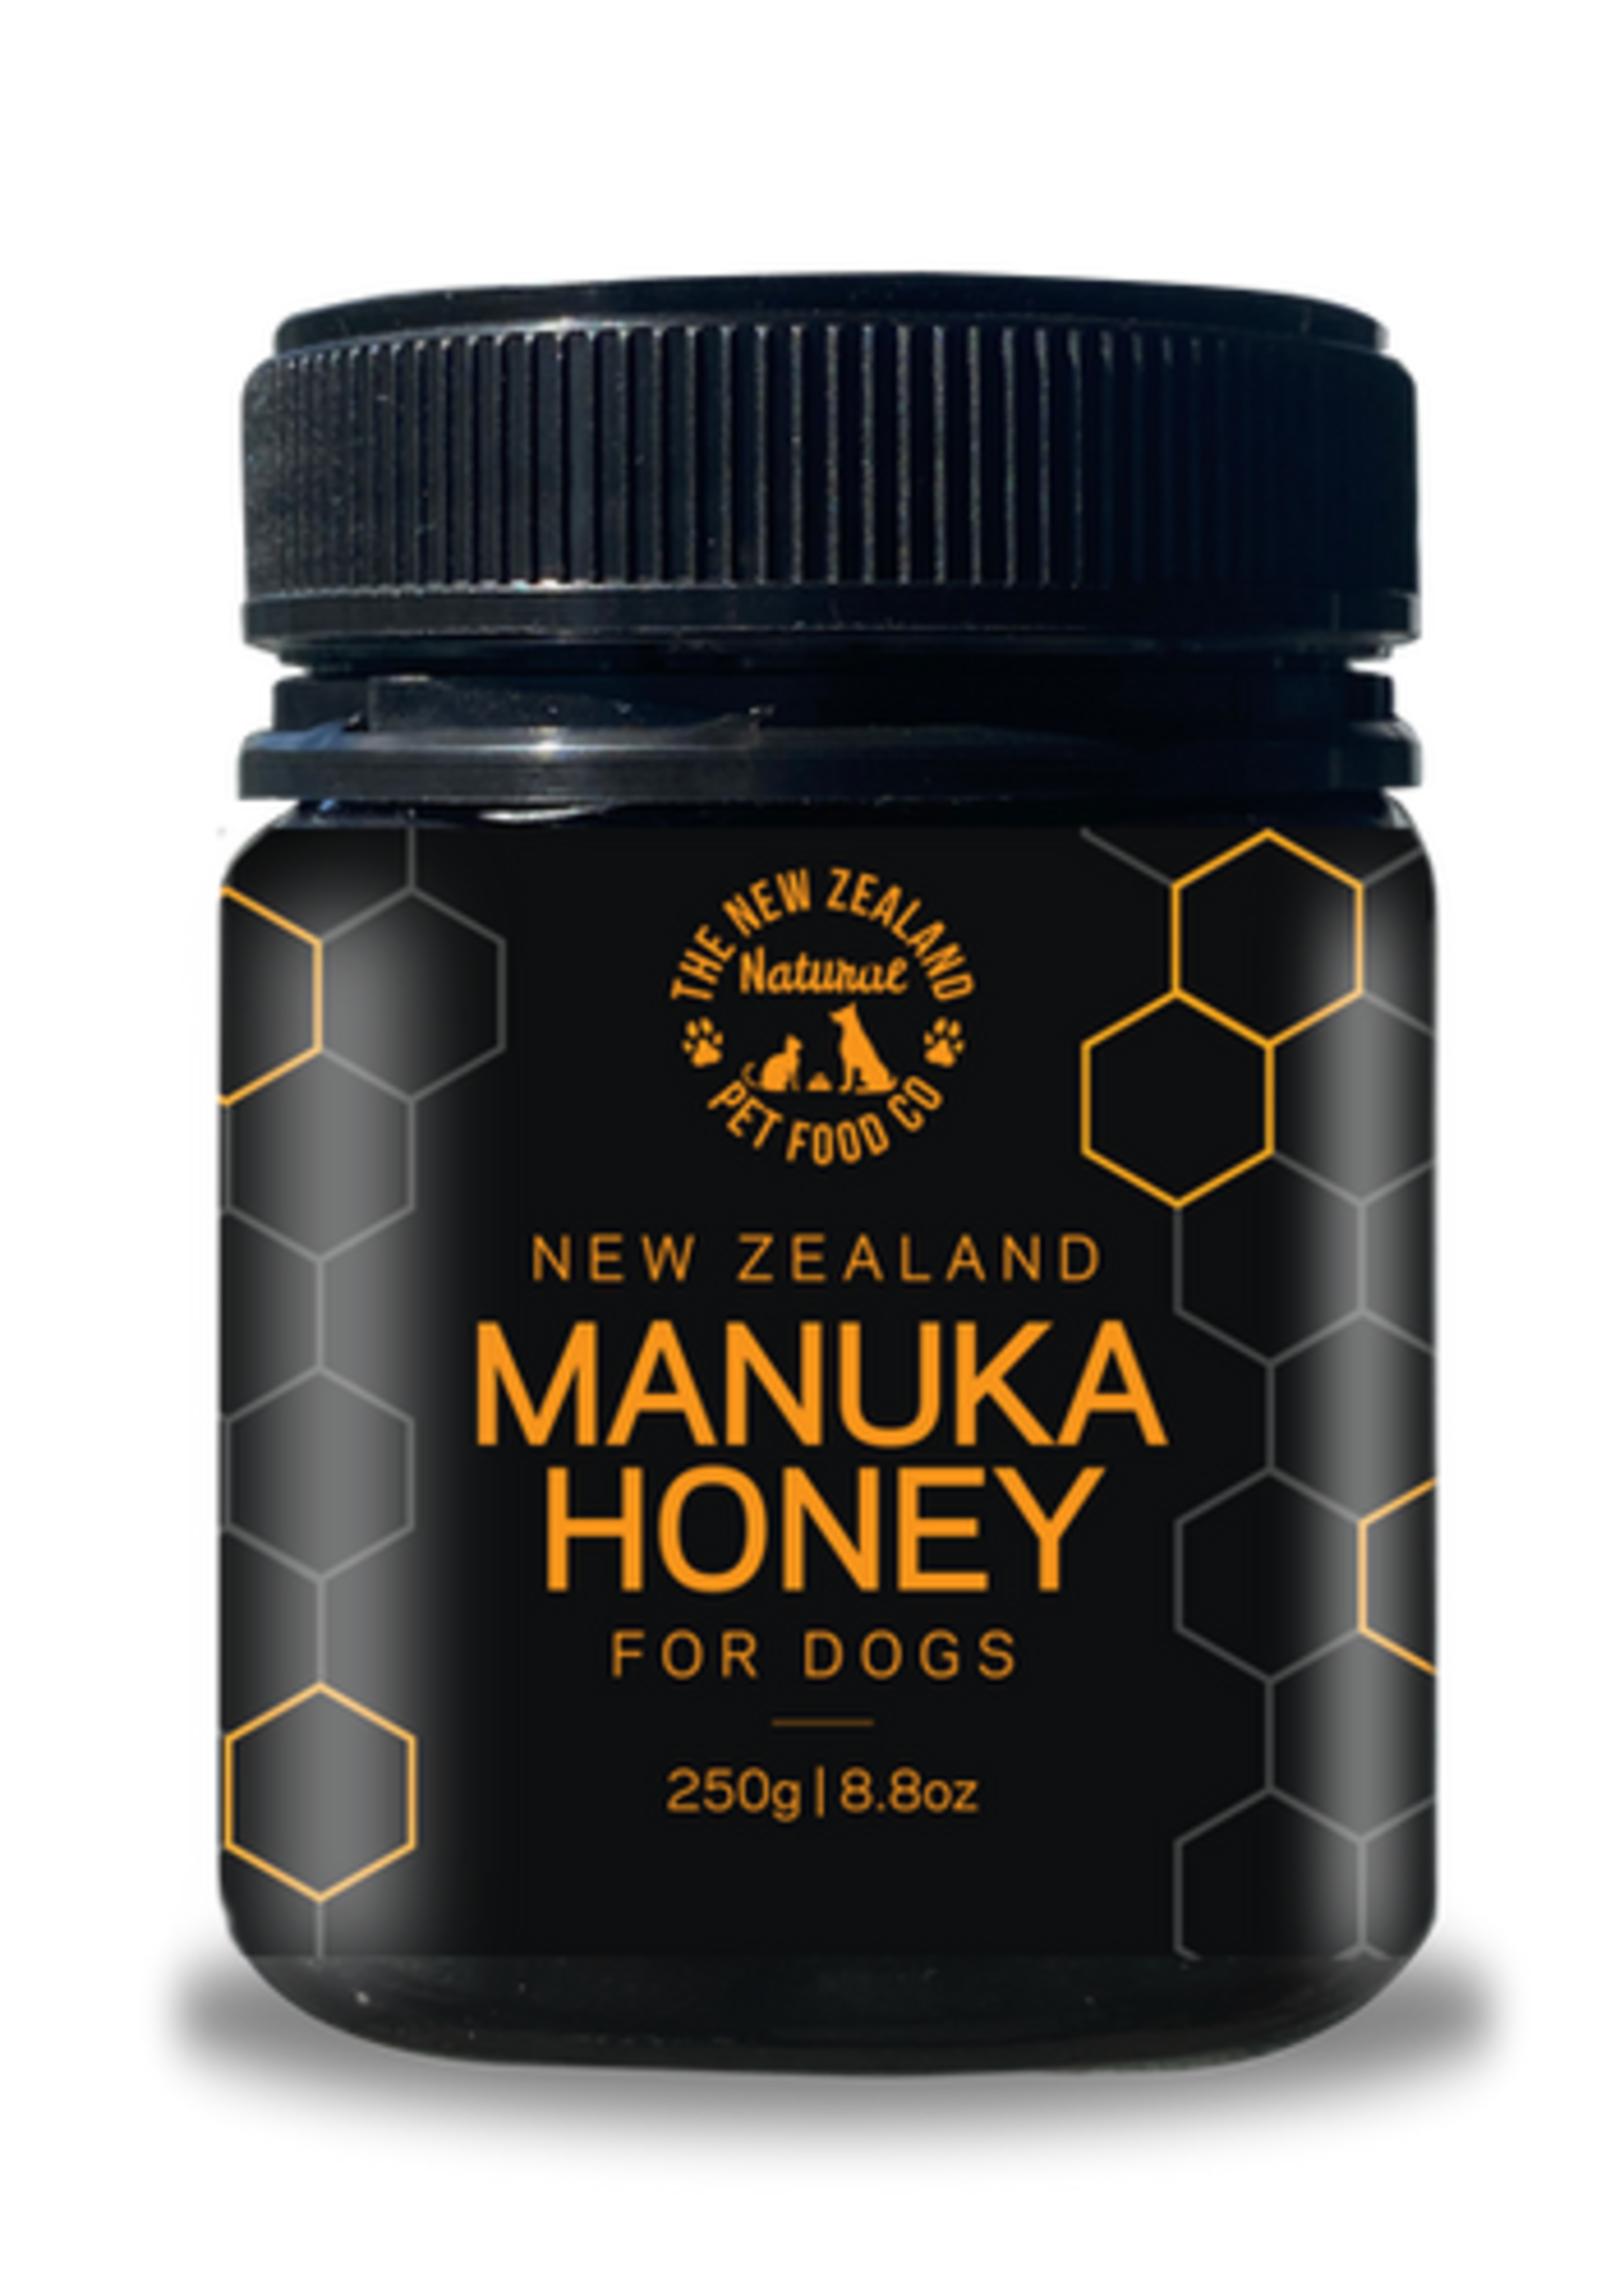 New Zealand Natural Pet Food Co NZ Natural Pet Food Co. Woof Manuka Honey 250g